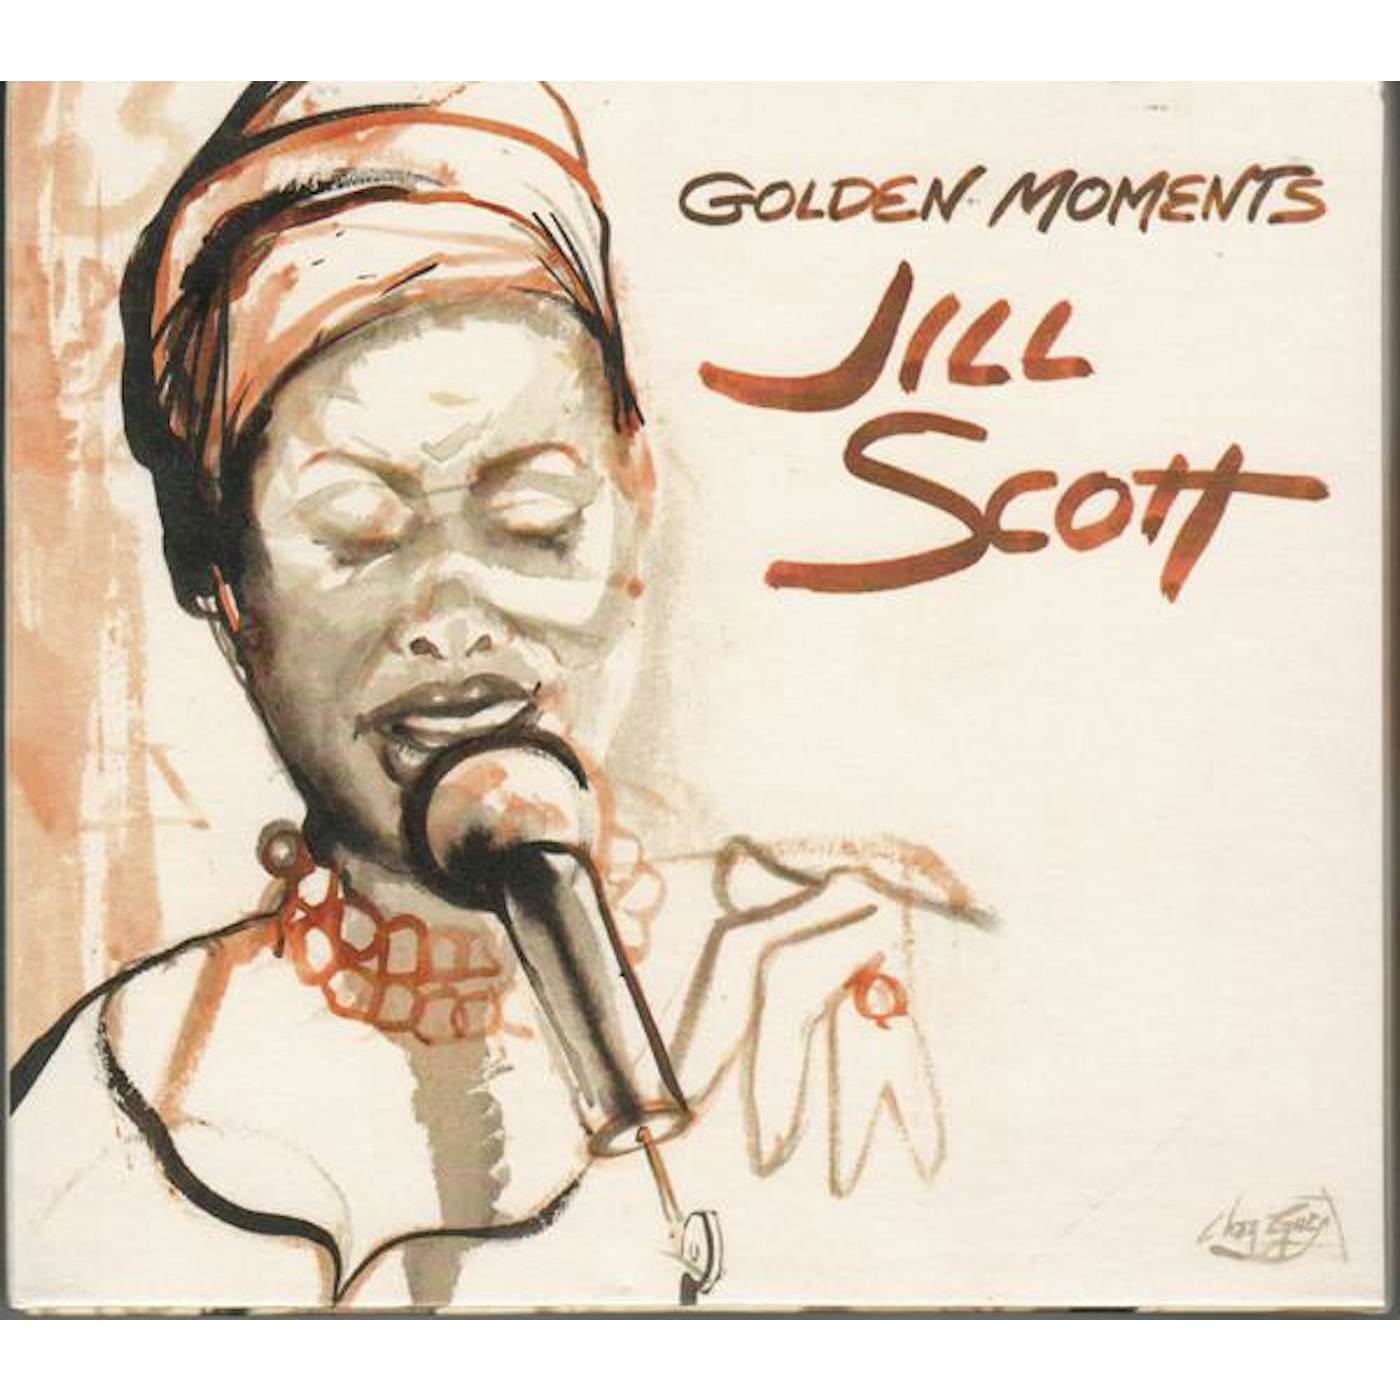 Jill Scott GOLDEN MOMENTS CD